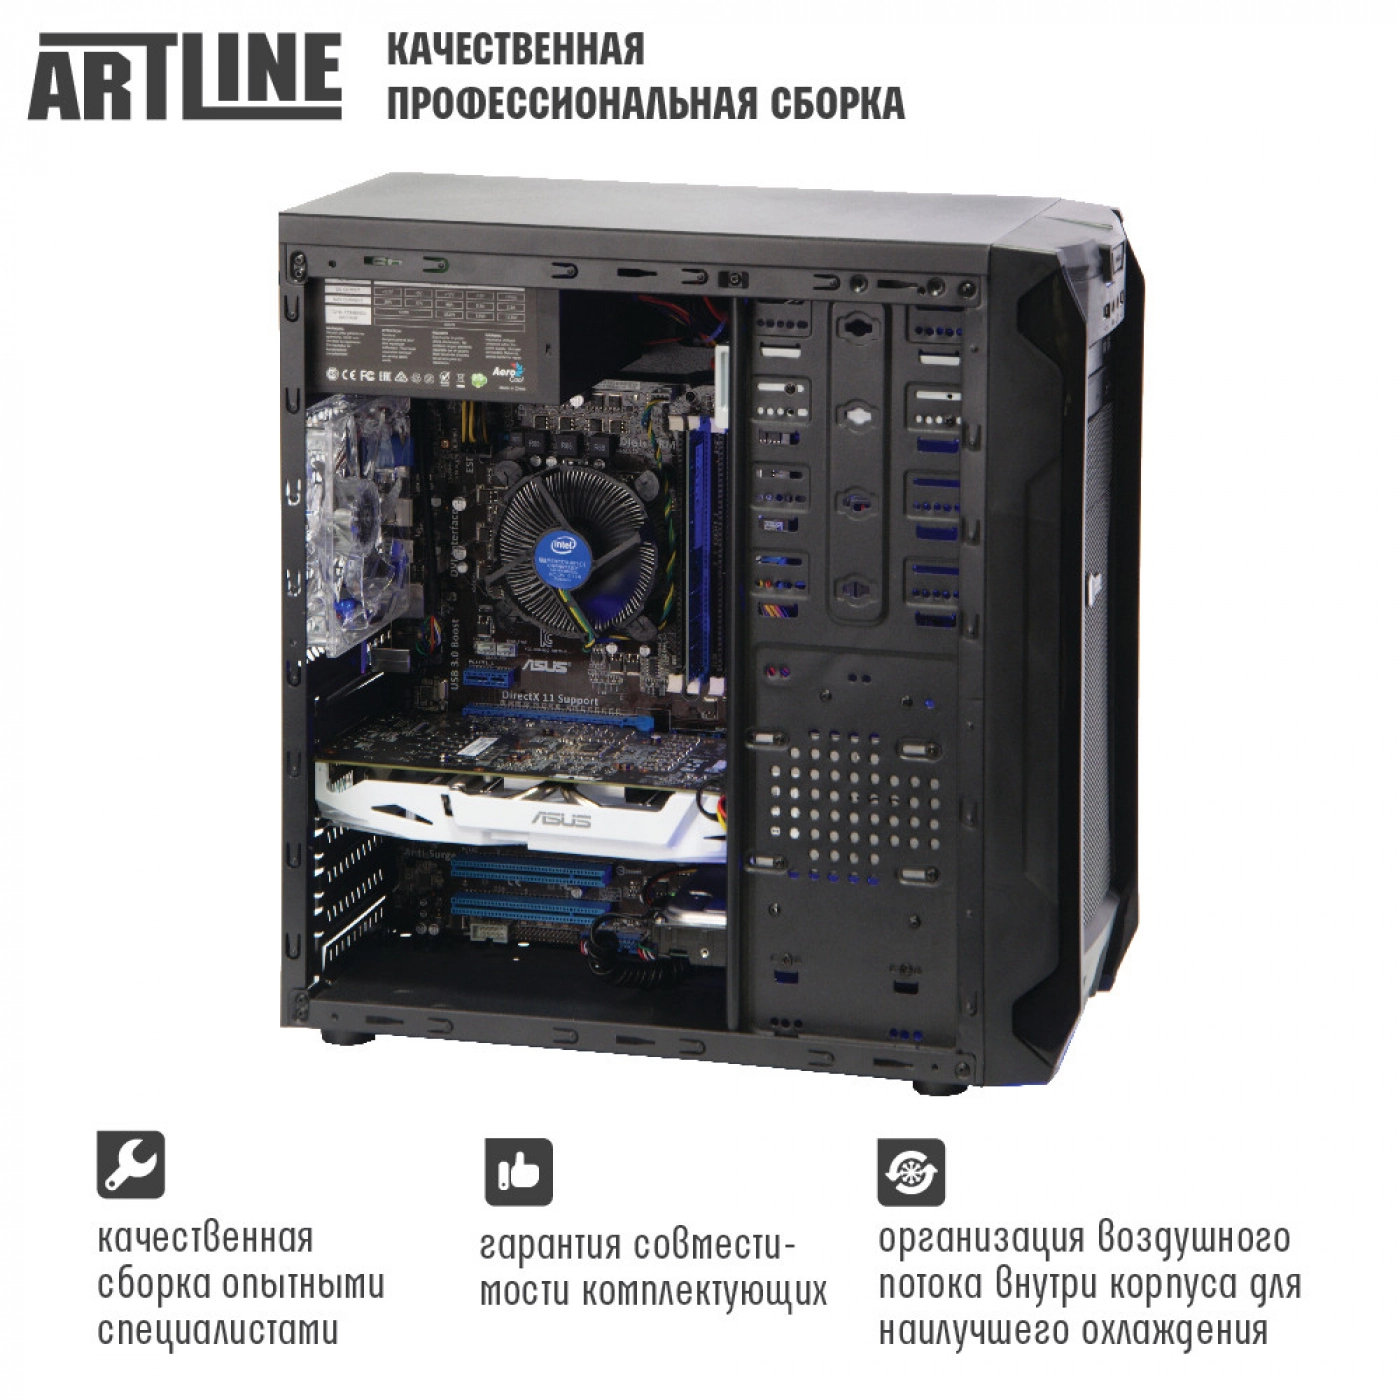 Купить Компьютер ARTLINE Business H42v02 - фото 2